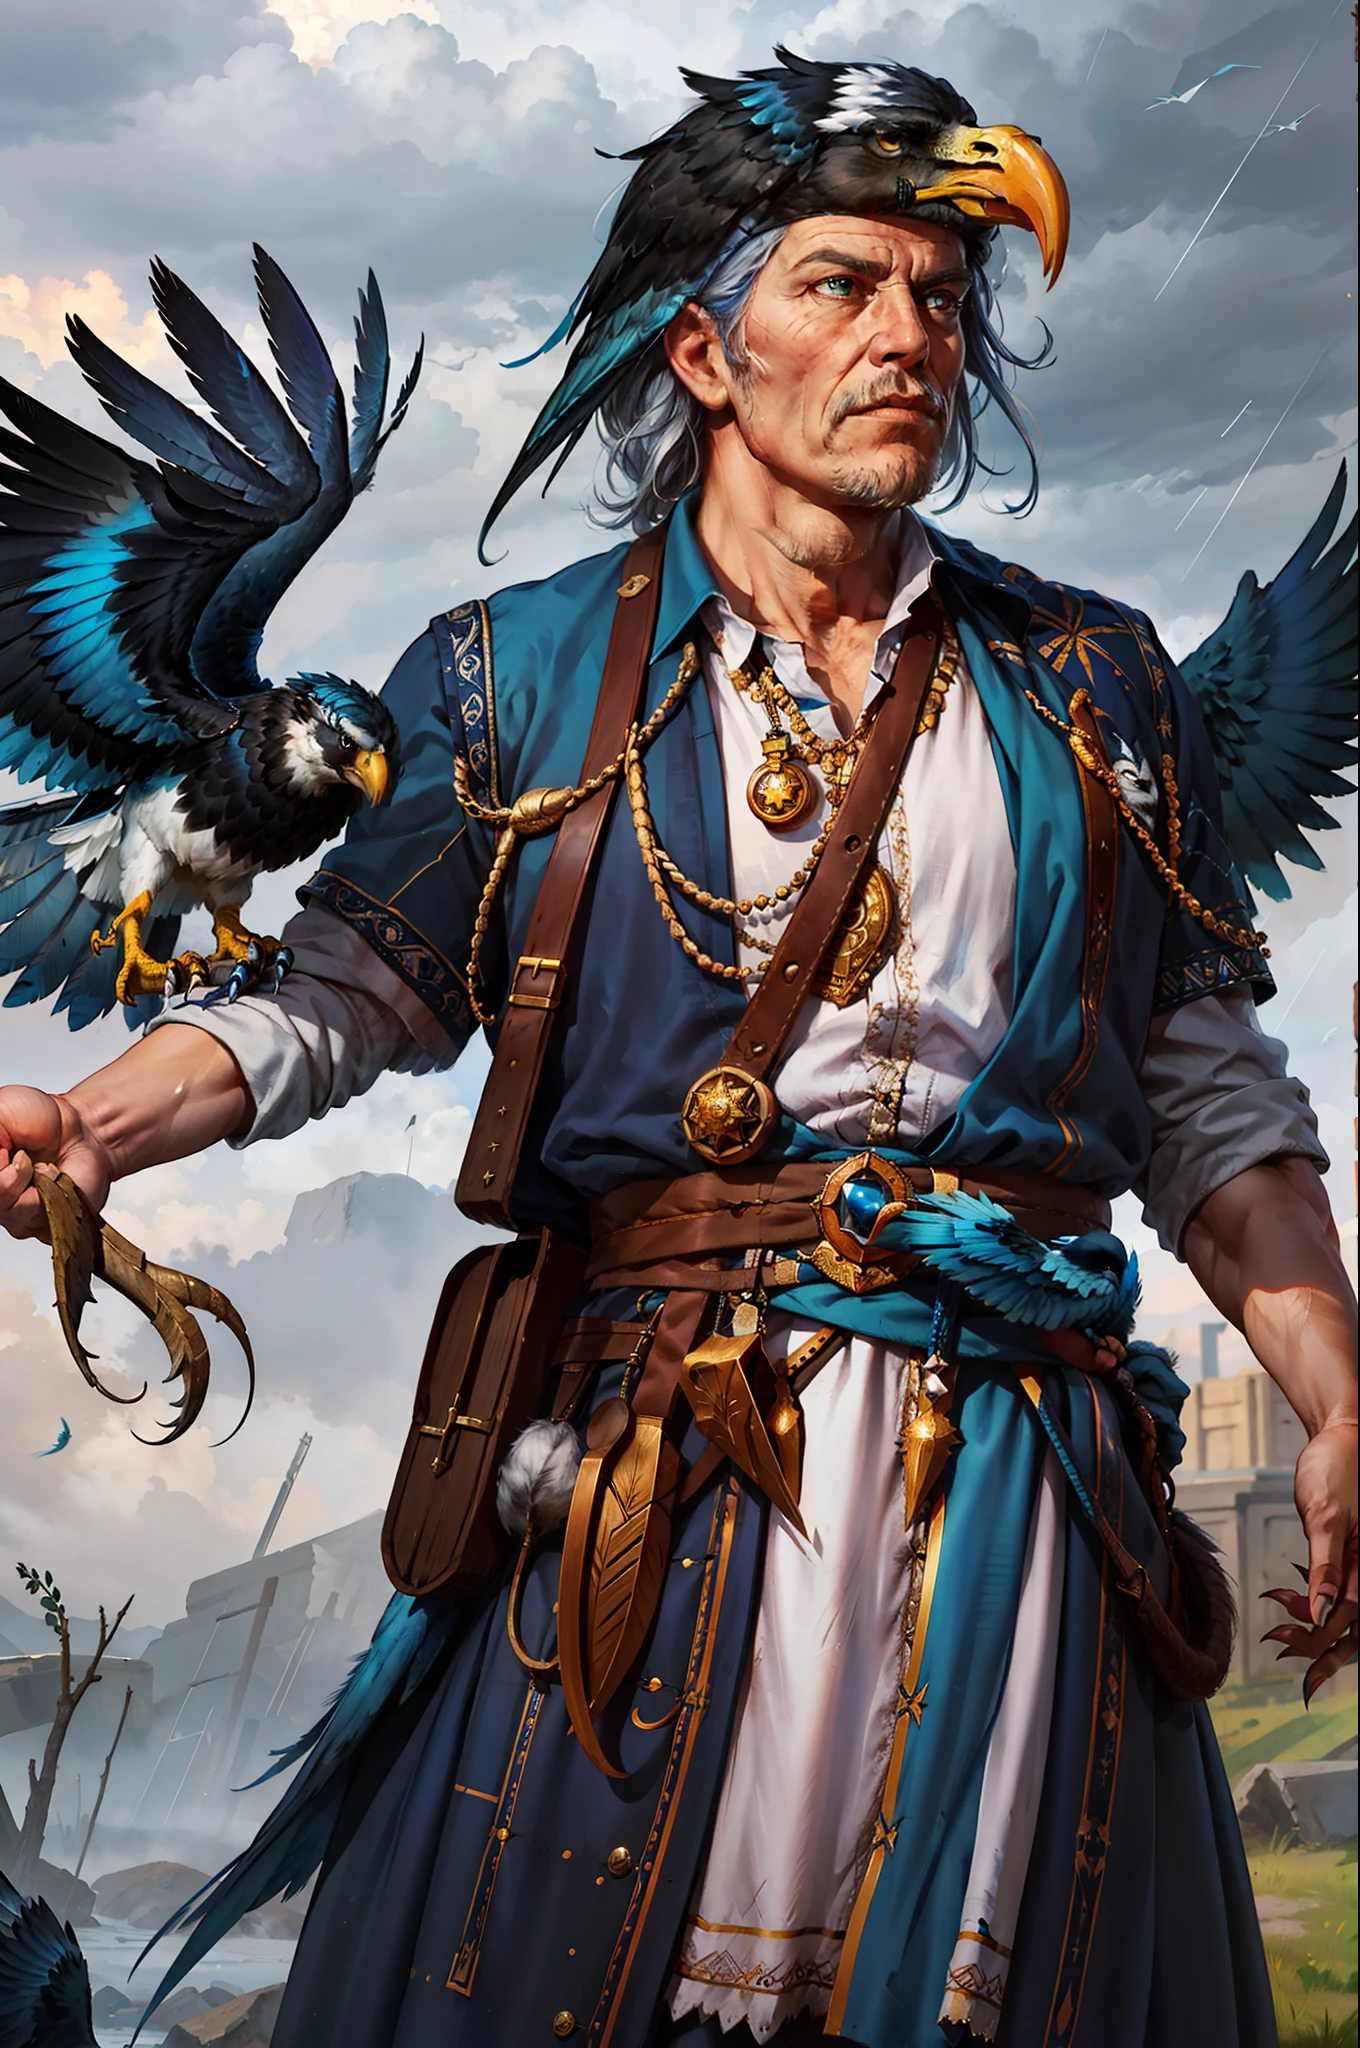 Bird, Cowboy-Schuss eines alten Zauberers, mit blauen Federn, Adlerschnabel, persönlich, Krähe, Sturm, Realistisch, Harpyie, scharfe Krallen, Muskeln, Realistisch photo, Nahaufnahme, keine Angst im Auge